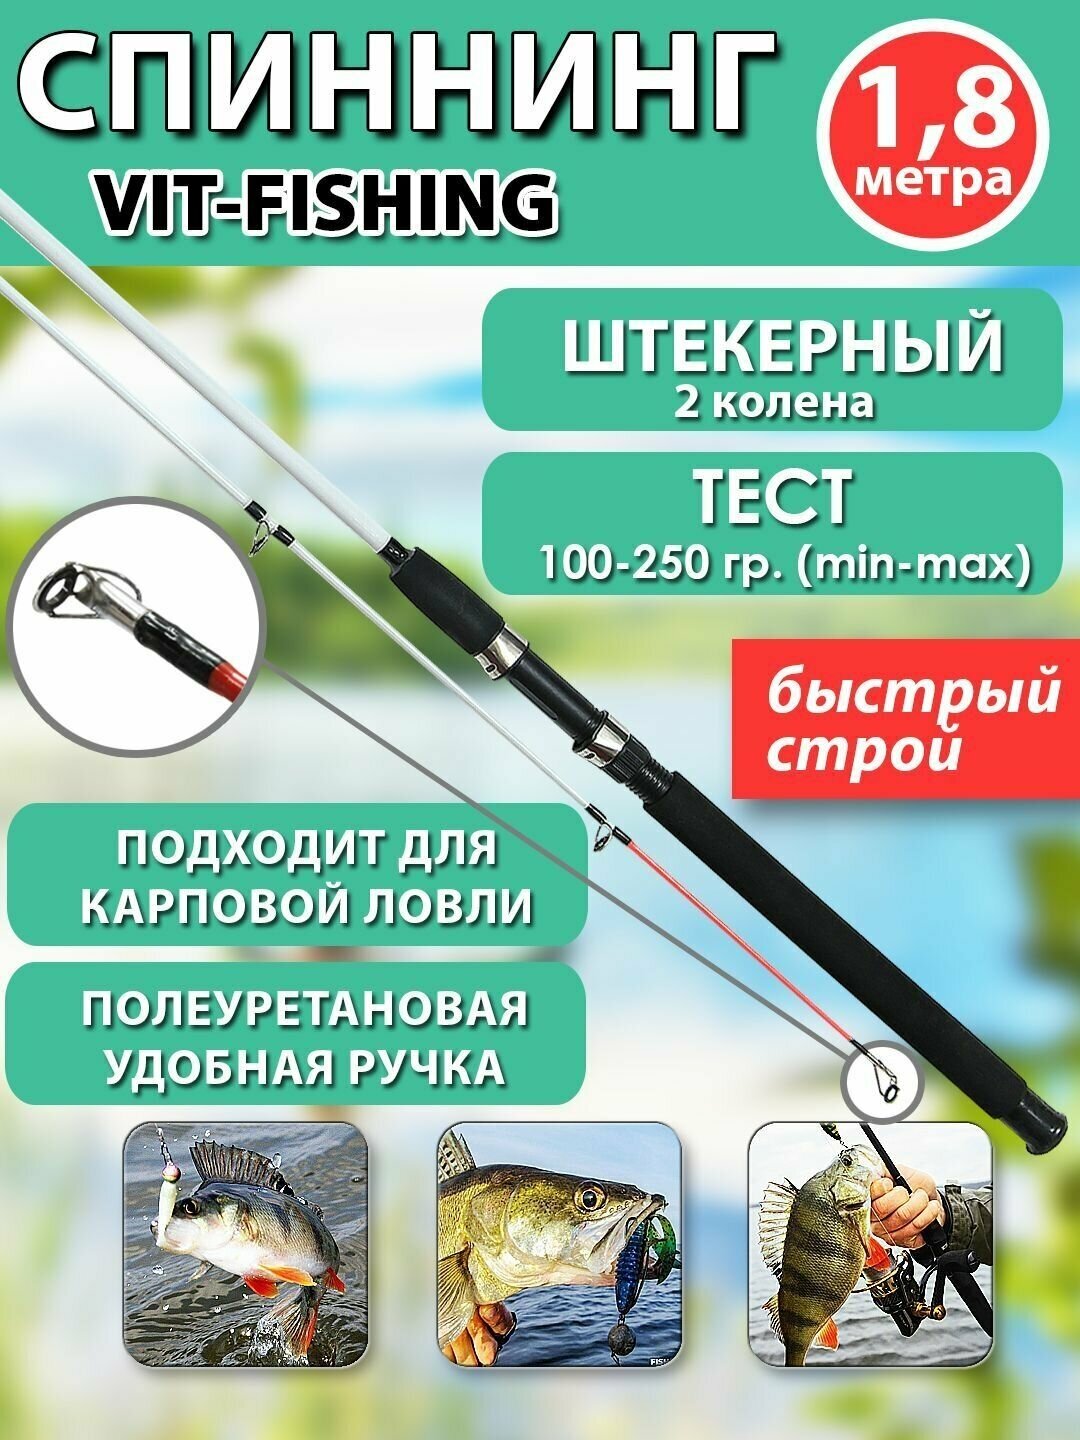 Спиннинг фидерный VITFISHING, штекерный 2 колена, 1.8 м, для летней рыбалки белый, быстрый строй, тест 100-250